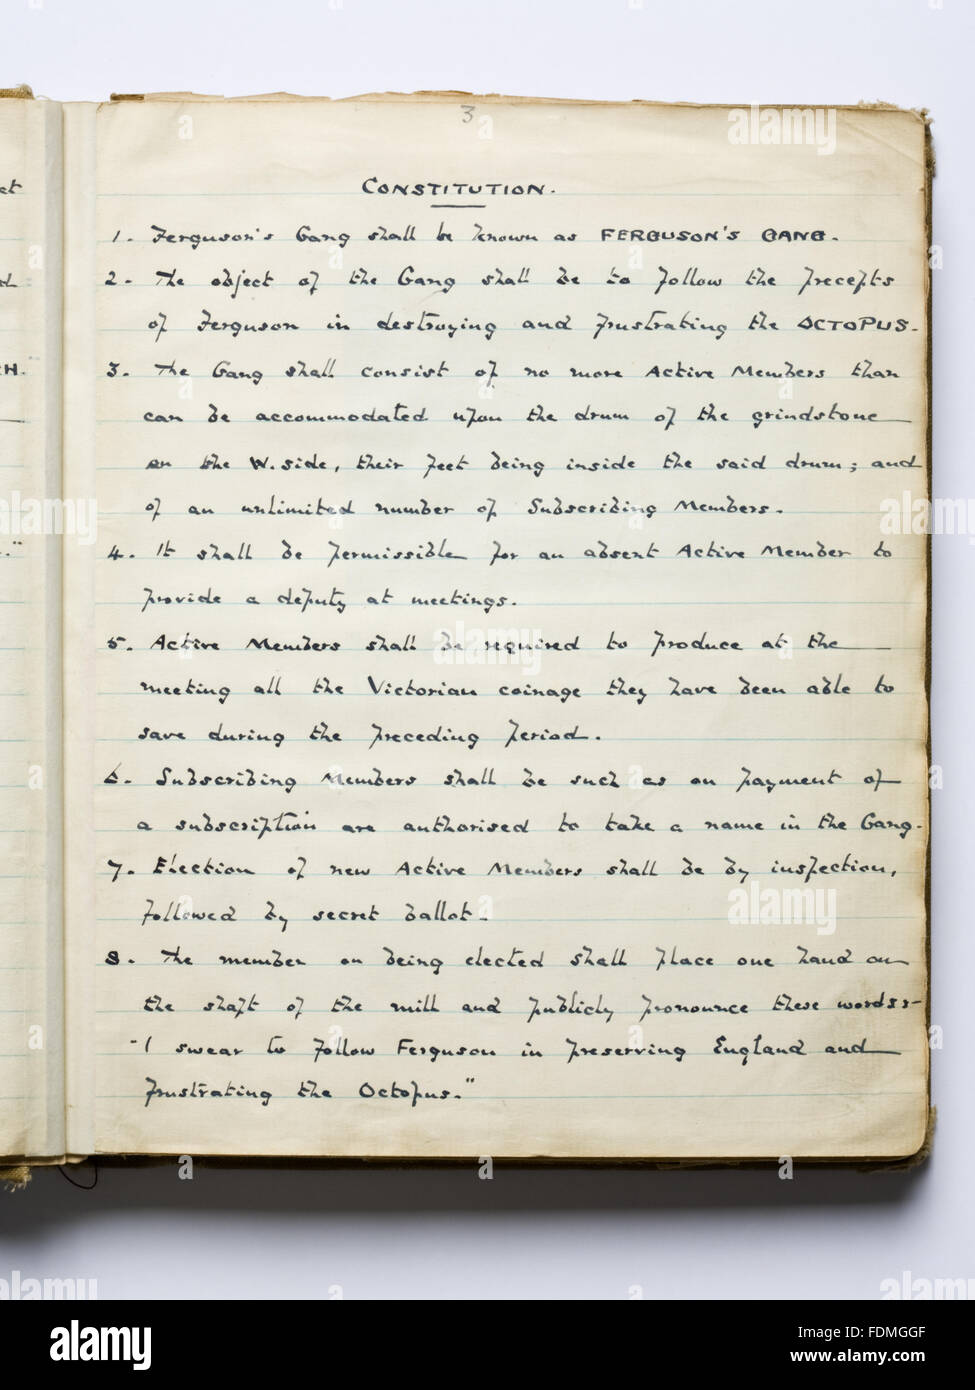 Photographie de la constitution écrite à la main dans la 'Boo' (livre) de Ferguson de la bande qui étaient un groupe de bienfaiteurs anonymes actif durant les années 1930. Banque D'Images